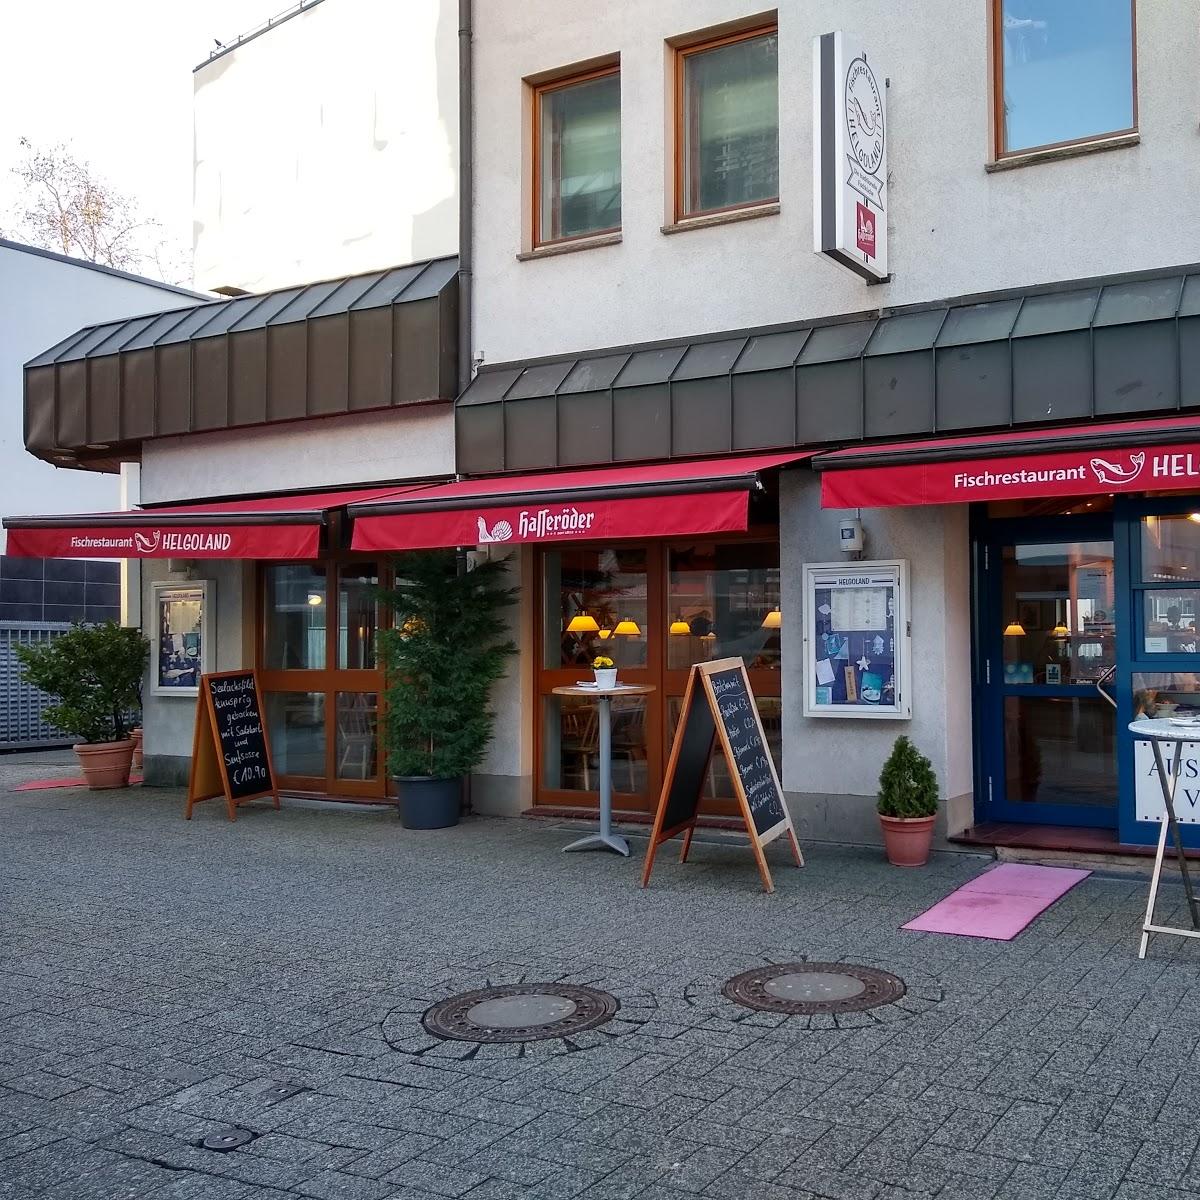 Restaurant "Fischrestaurant Helgoland" in  Osnabrück